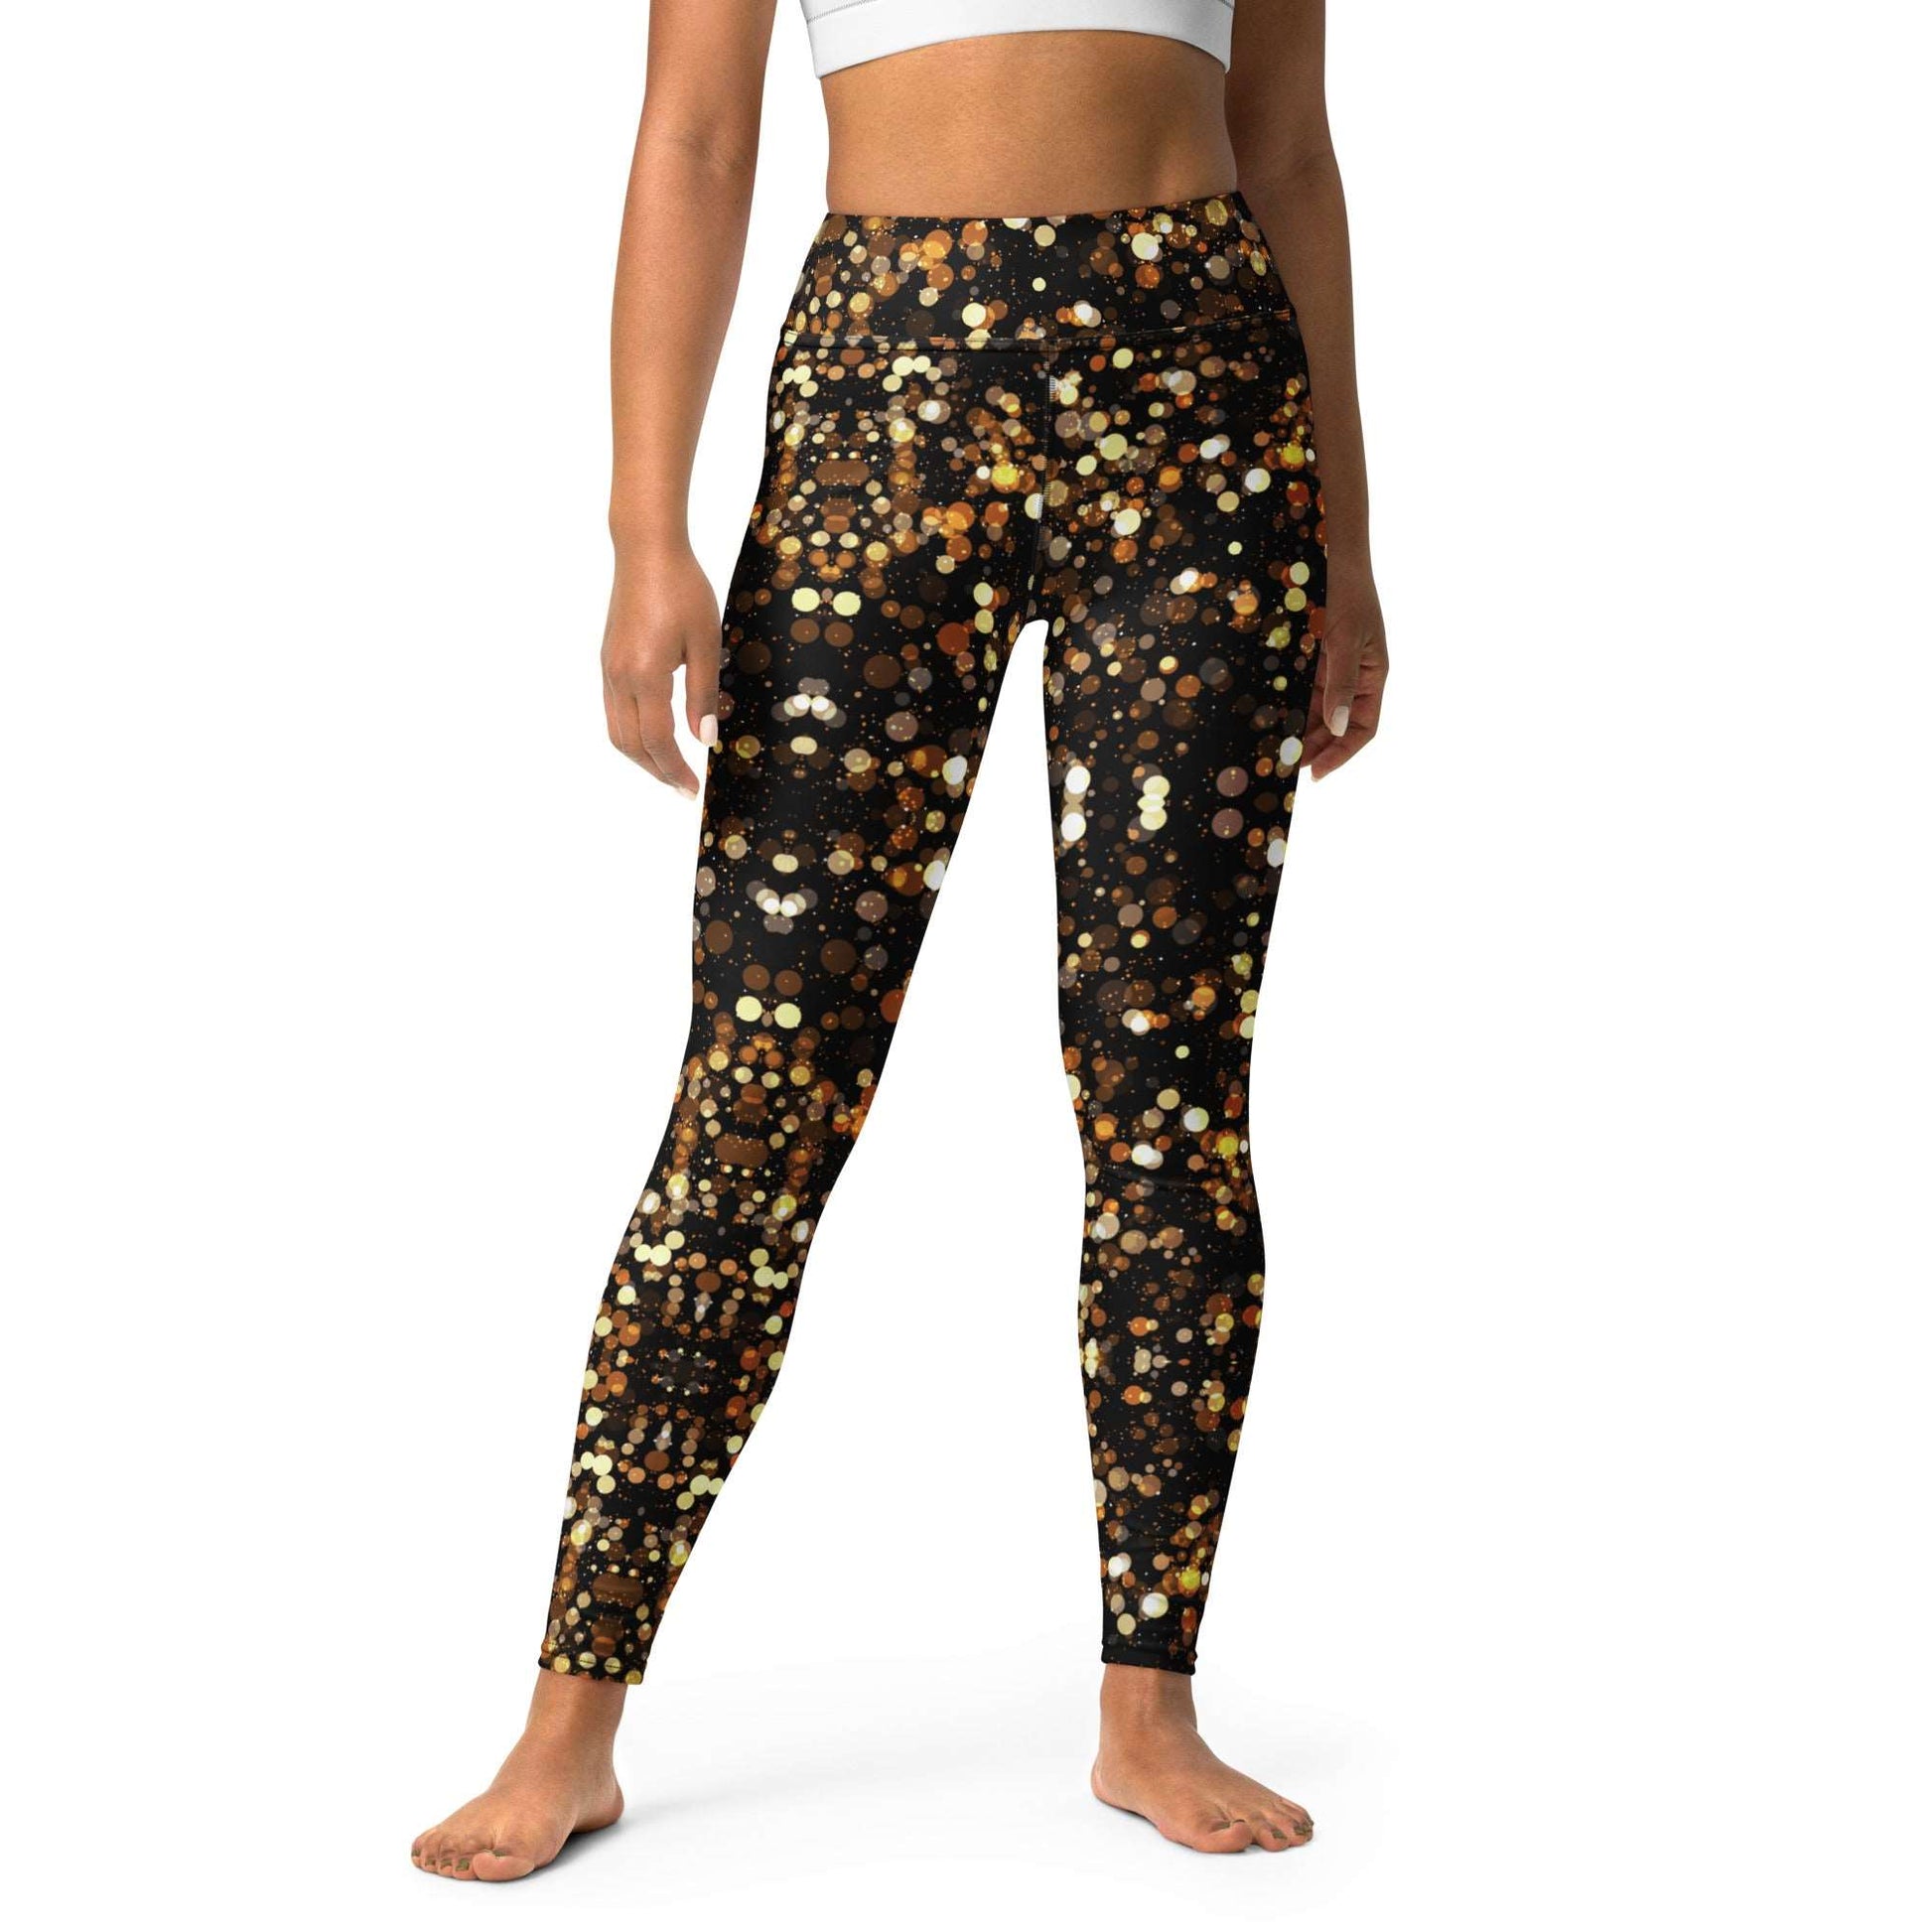 Golden Shimmer Yoga Leggings -Any Occasion Leggings, Gold Sparkle Leggings, Rave Leggings, Date Night Leggings